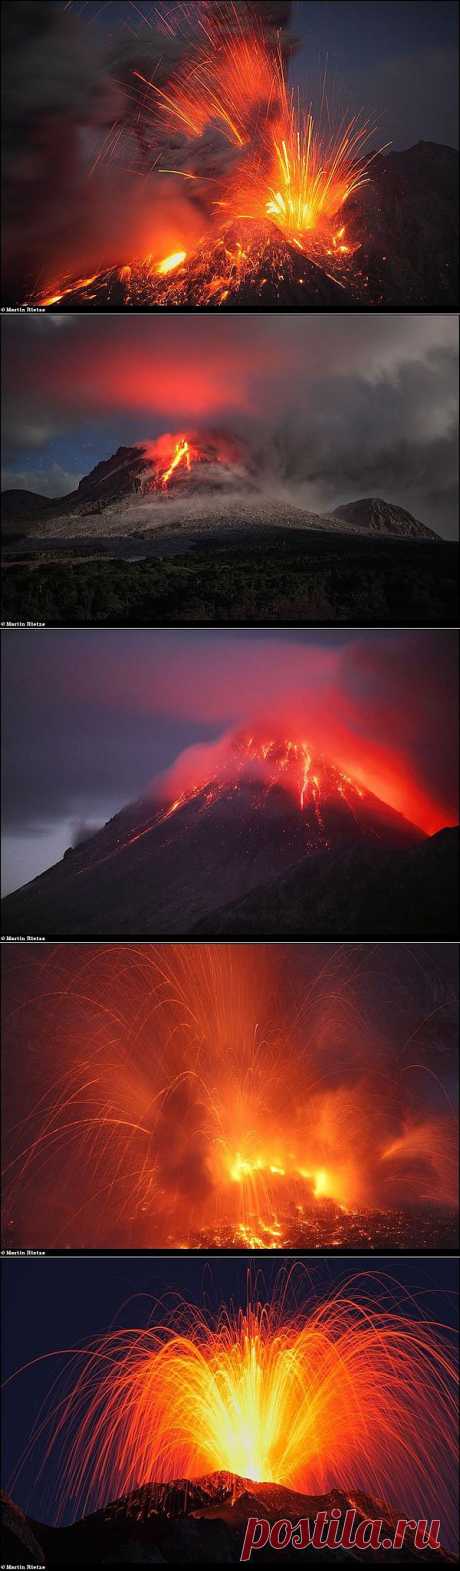 Извержение вулканов.